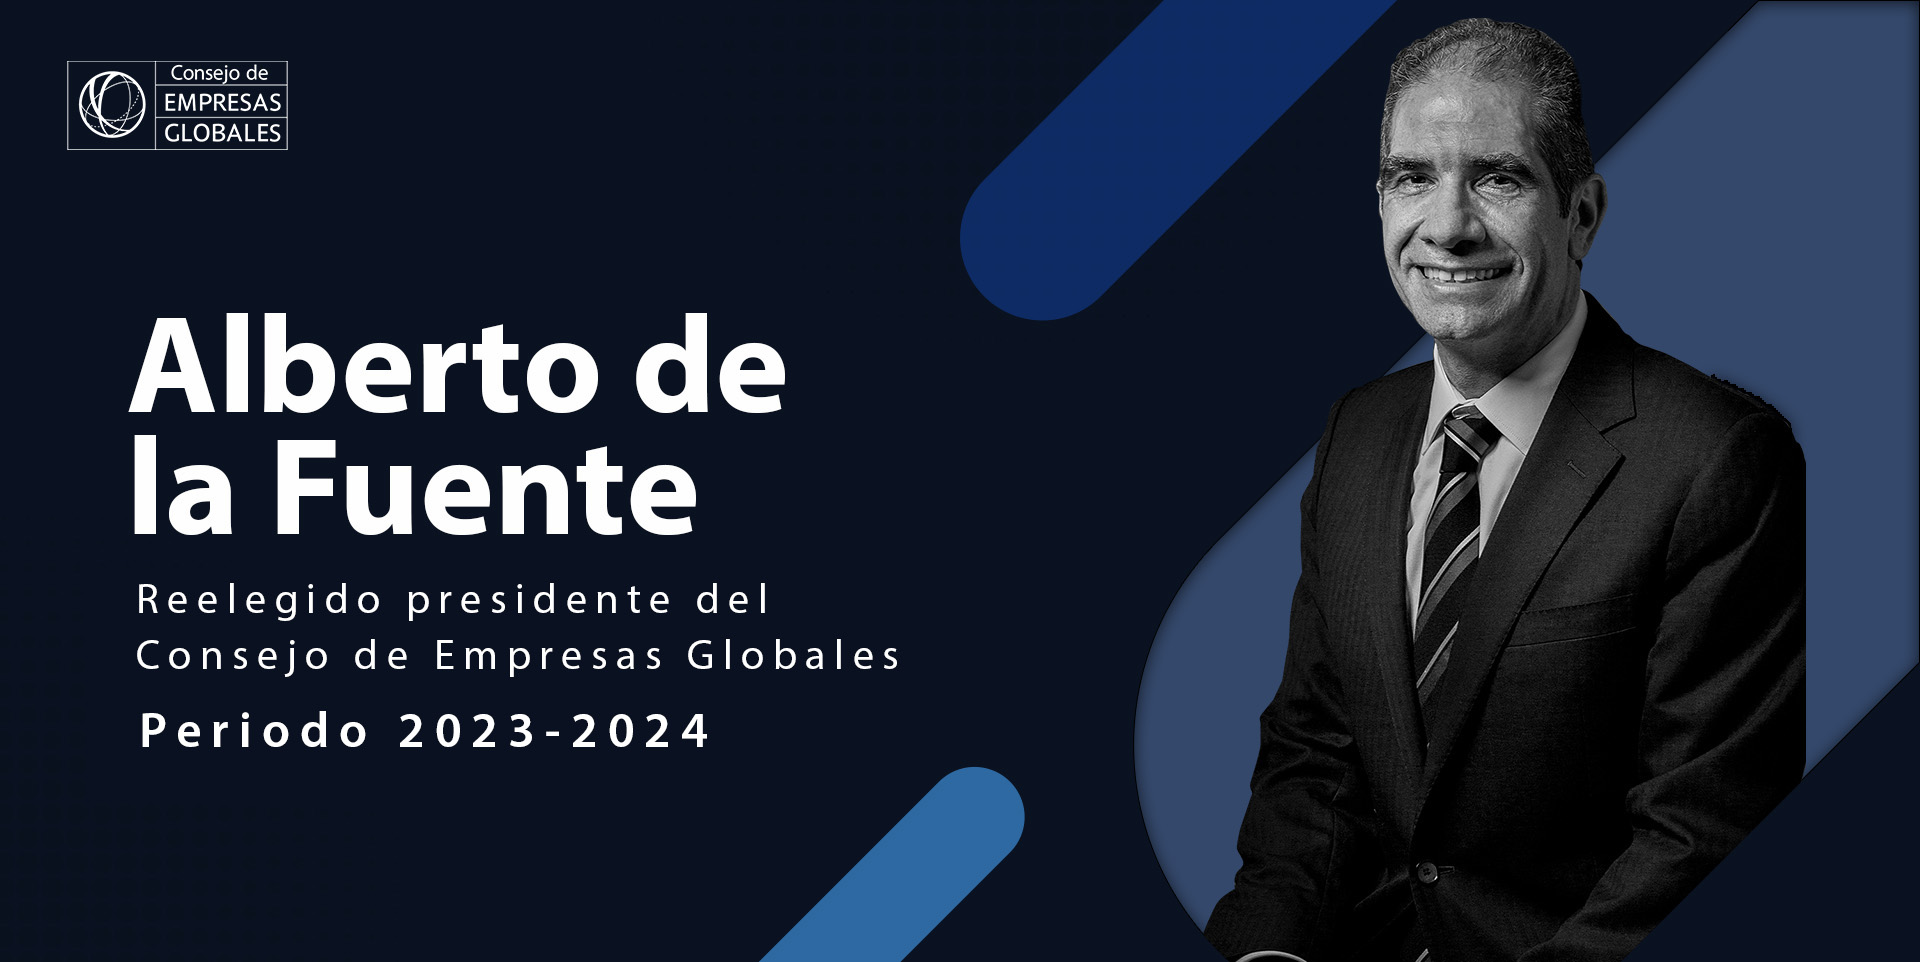 Alberto de la Fuente, es reelegido como presidente del Consejo de Empresas Globales